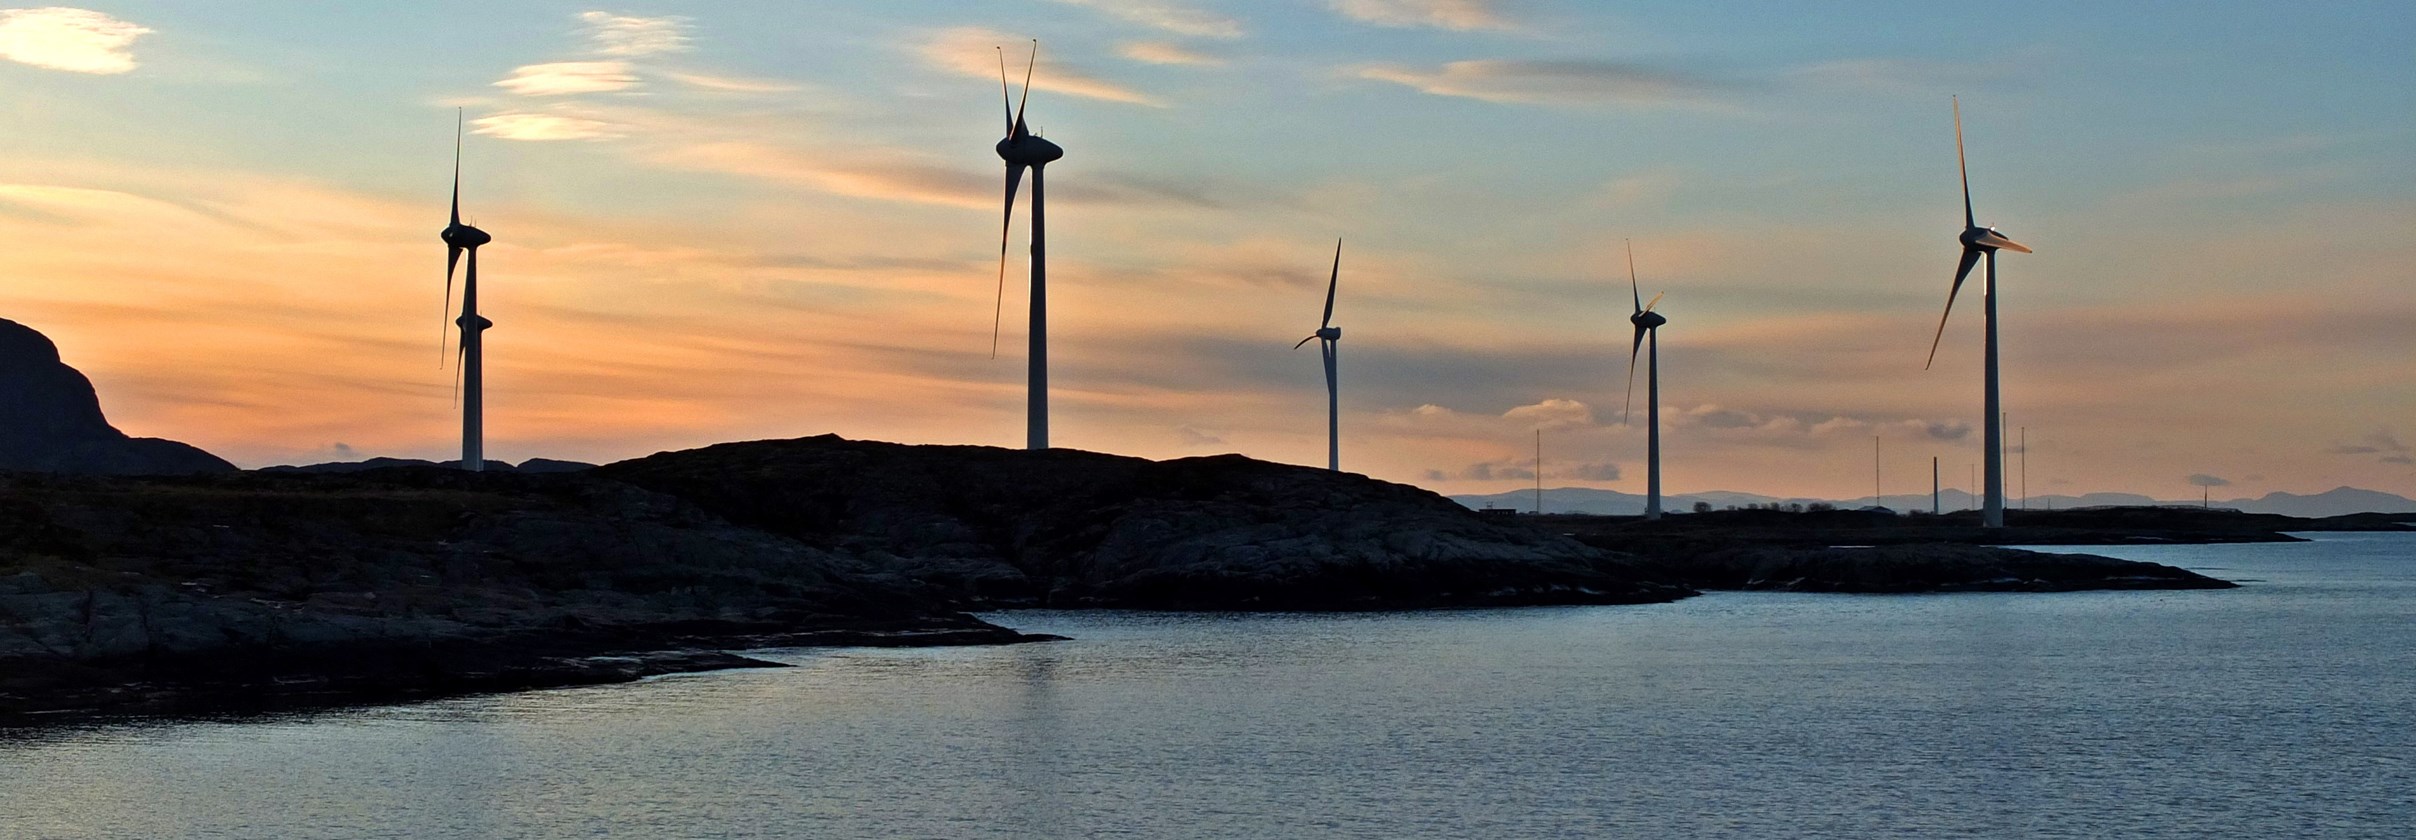 Valneset windmill Park in Bjugn, Sør-Trøndelag.